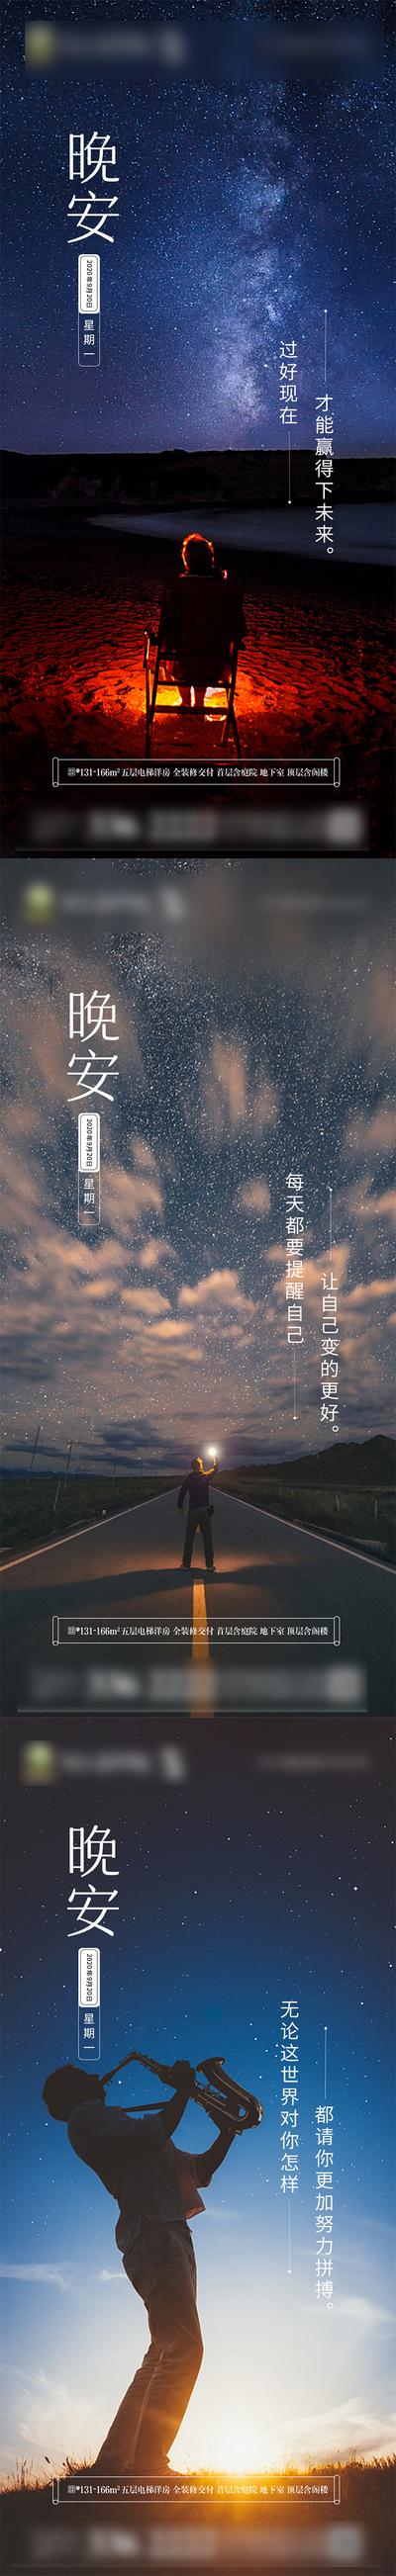 南门网 海报 房地产 系列 风景 晚安 日签 意境 星空 质感 版式 精致